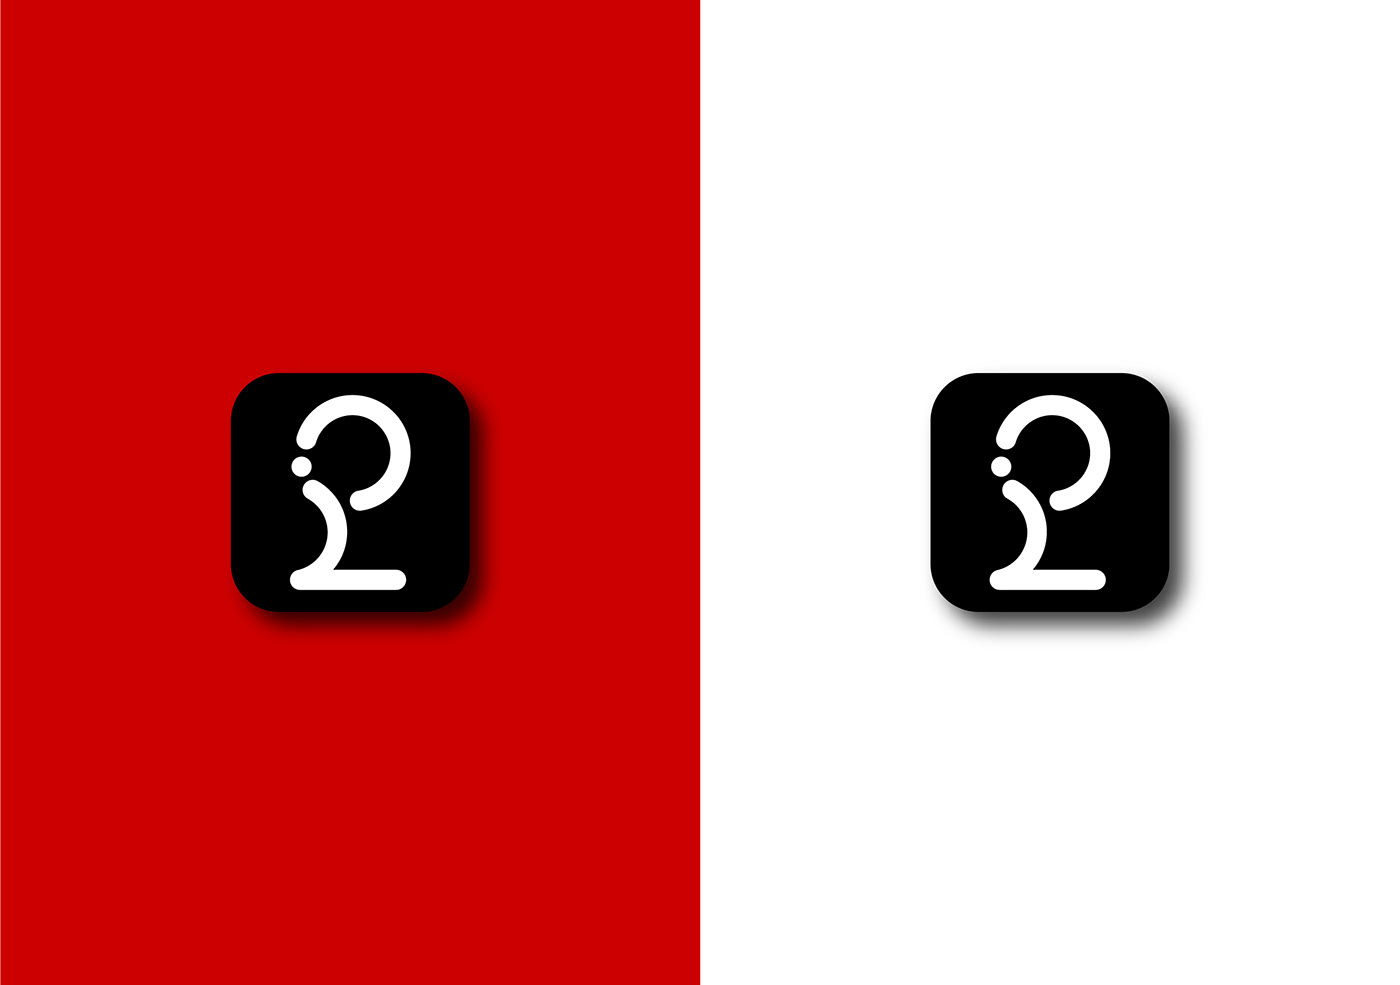 brand design logo modern brand identity symbol Logotype visual identity Game Development Logo red